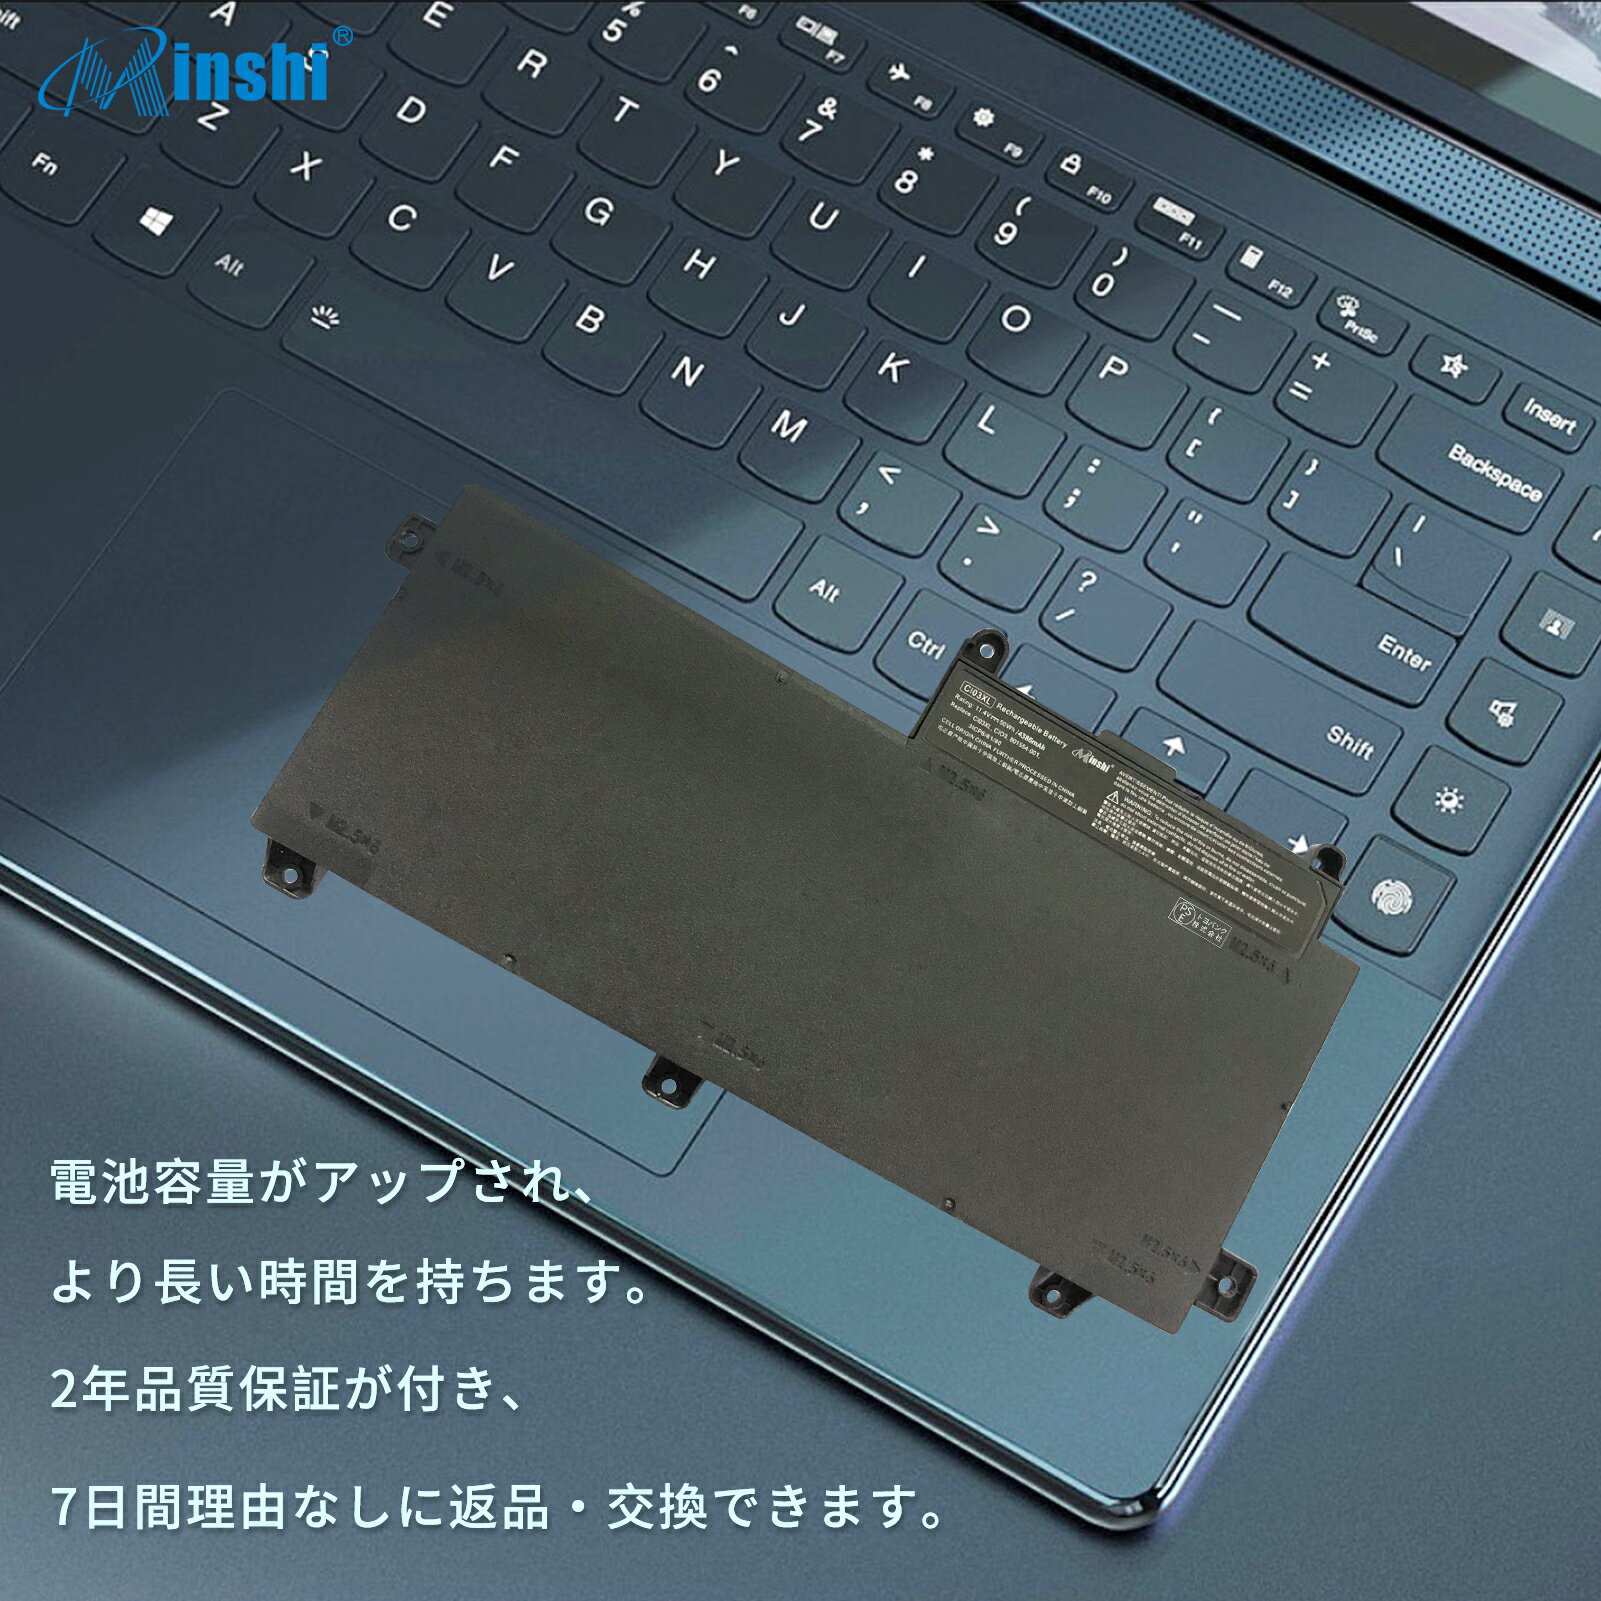 minshi 新品 HP エイチピー ProBook 655 G3 互換バッテリー 対応 高品質交換用電池パック PSE認証 1年間保証 4386mAh 2